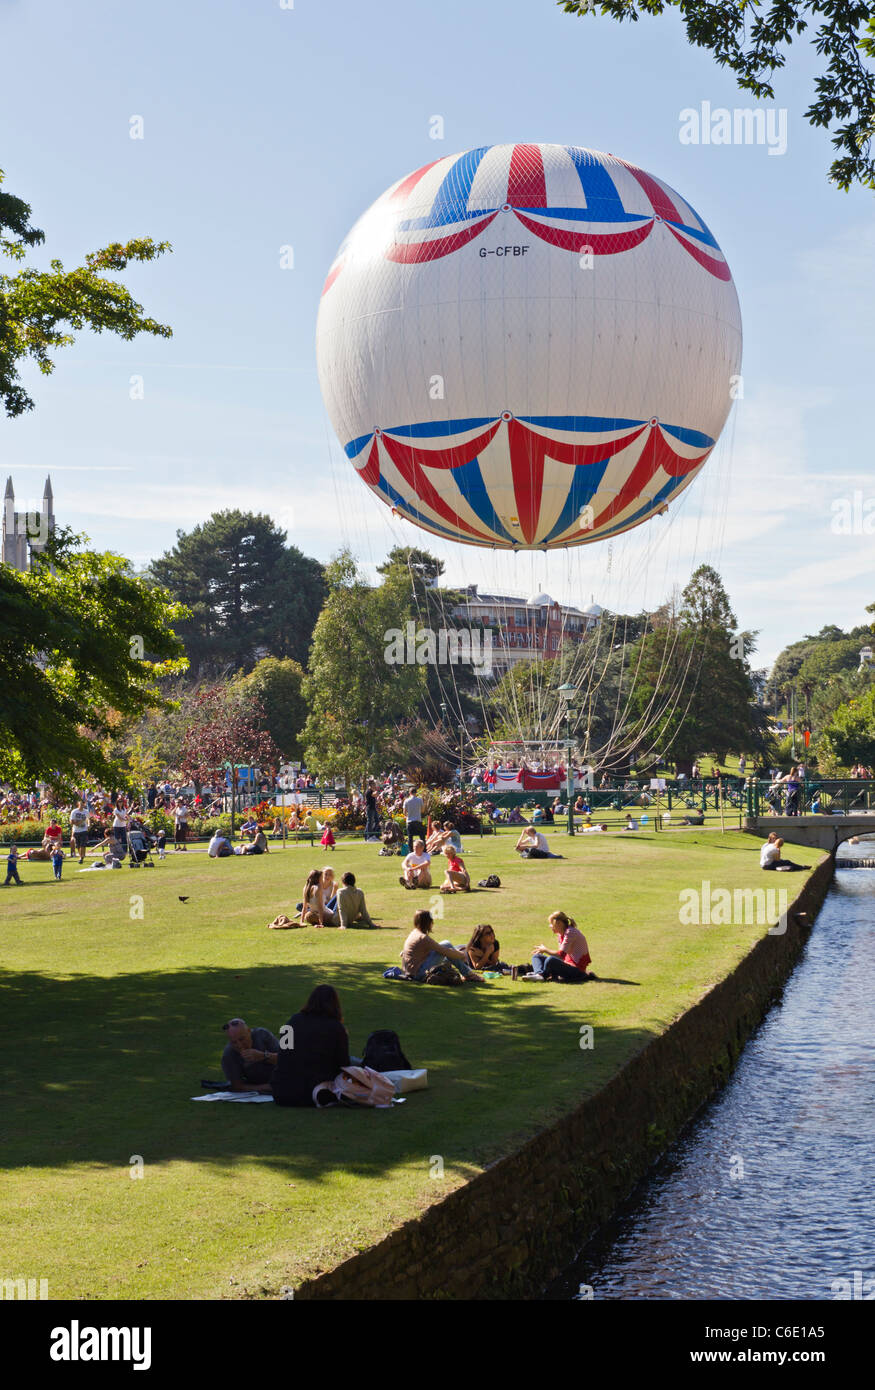 Neue Bournemouth Auge Beobachtung Heliumballon an schönen sonnigen Tag mit Menschen entspannen im Garten neben fließenden Wasser Stockfoto